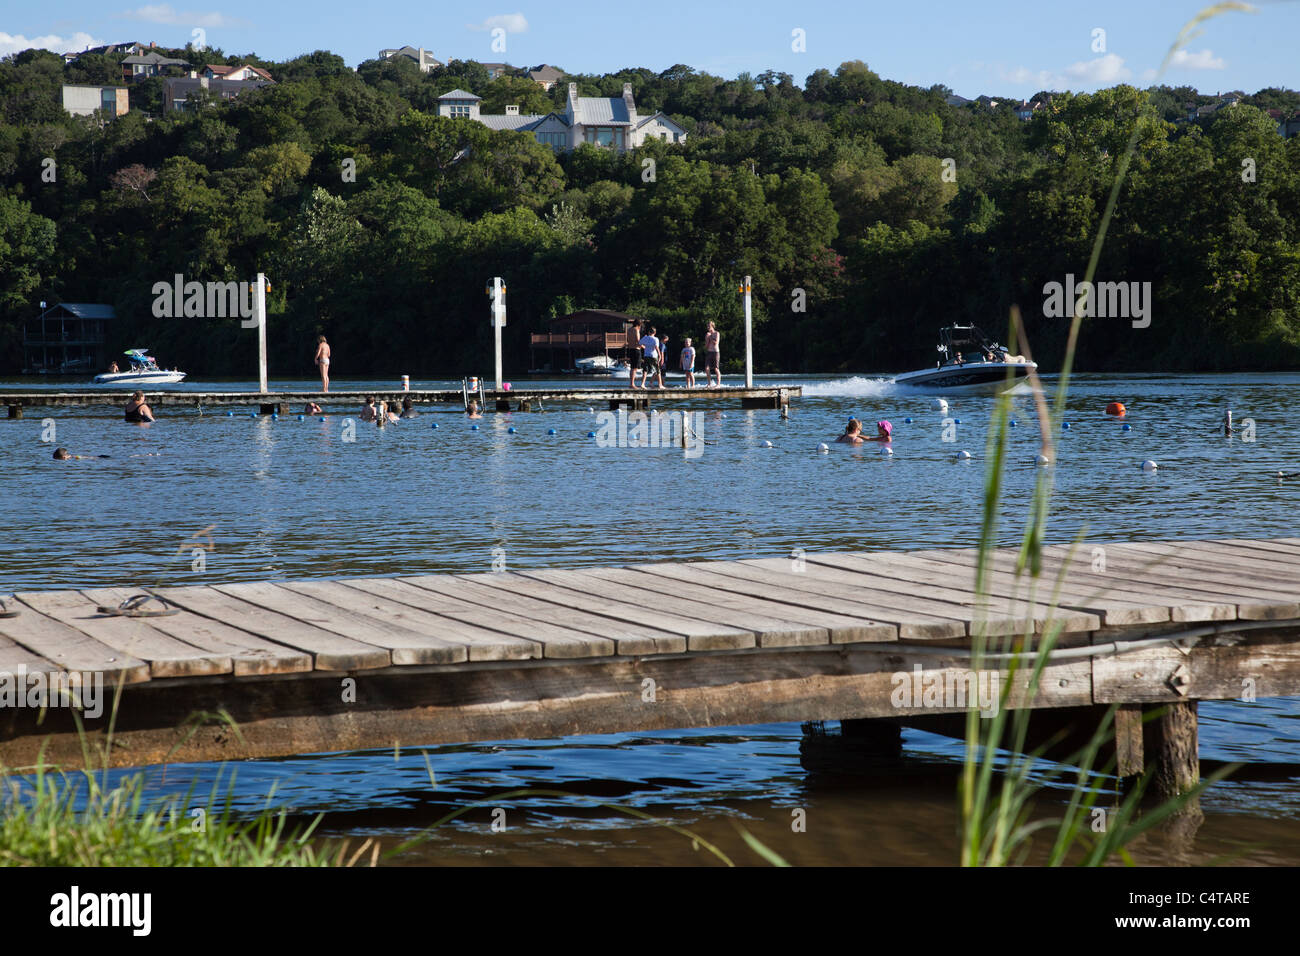 Los nadadores y barcos por un muelle Emma Long Park en Austin, Texas  Fotografía de stock - Alamy